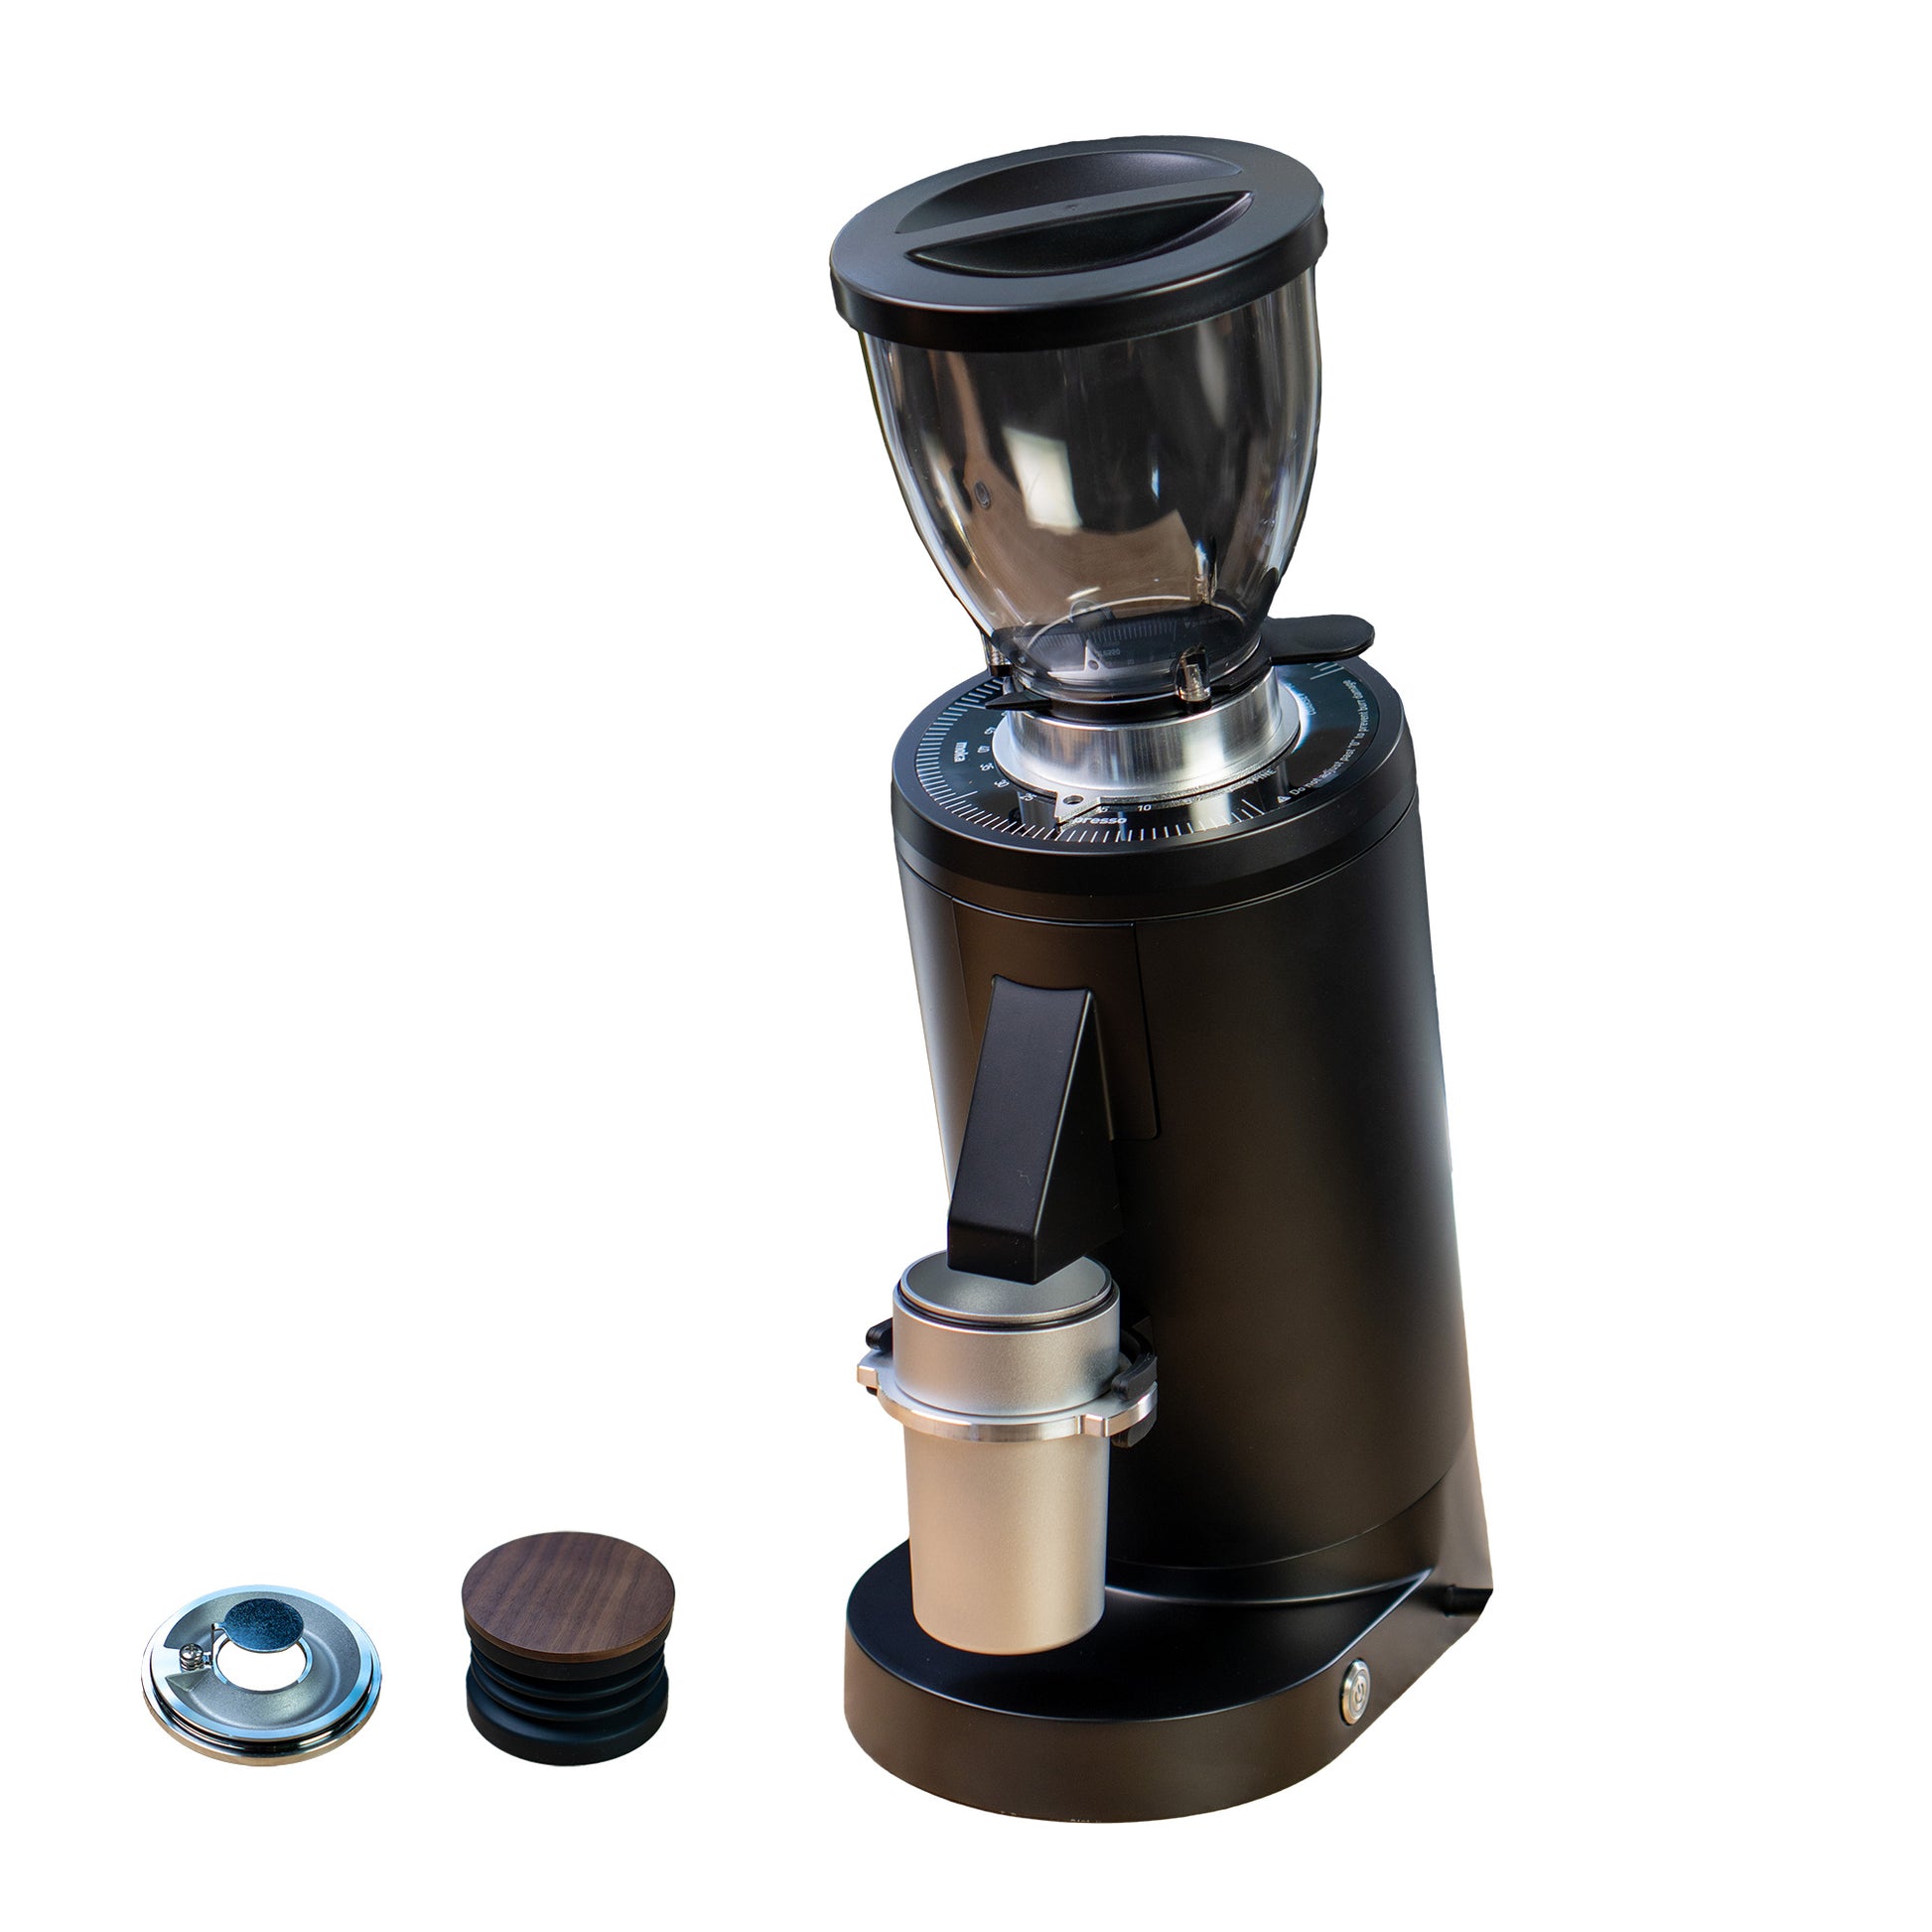 MiiCoffee DF64P Premium Single Dose Espresso Grinder